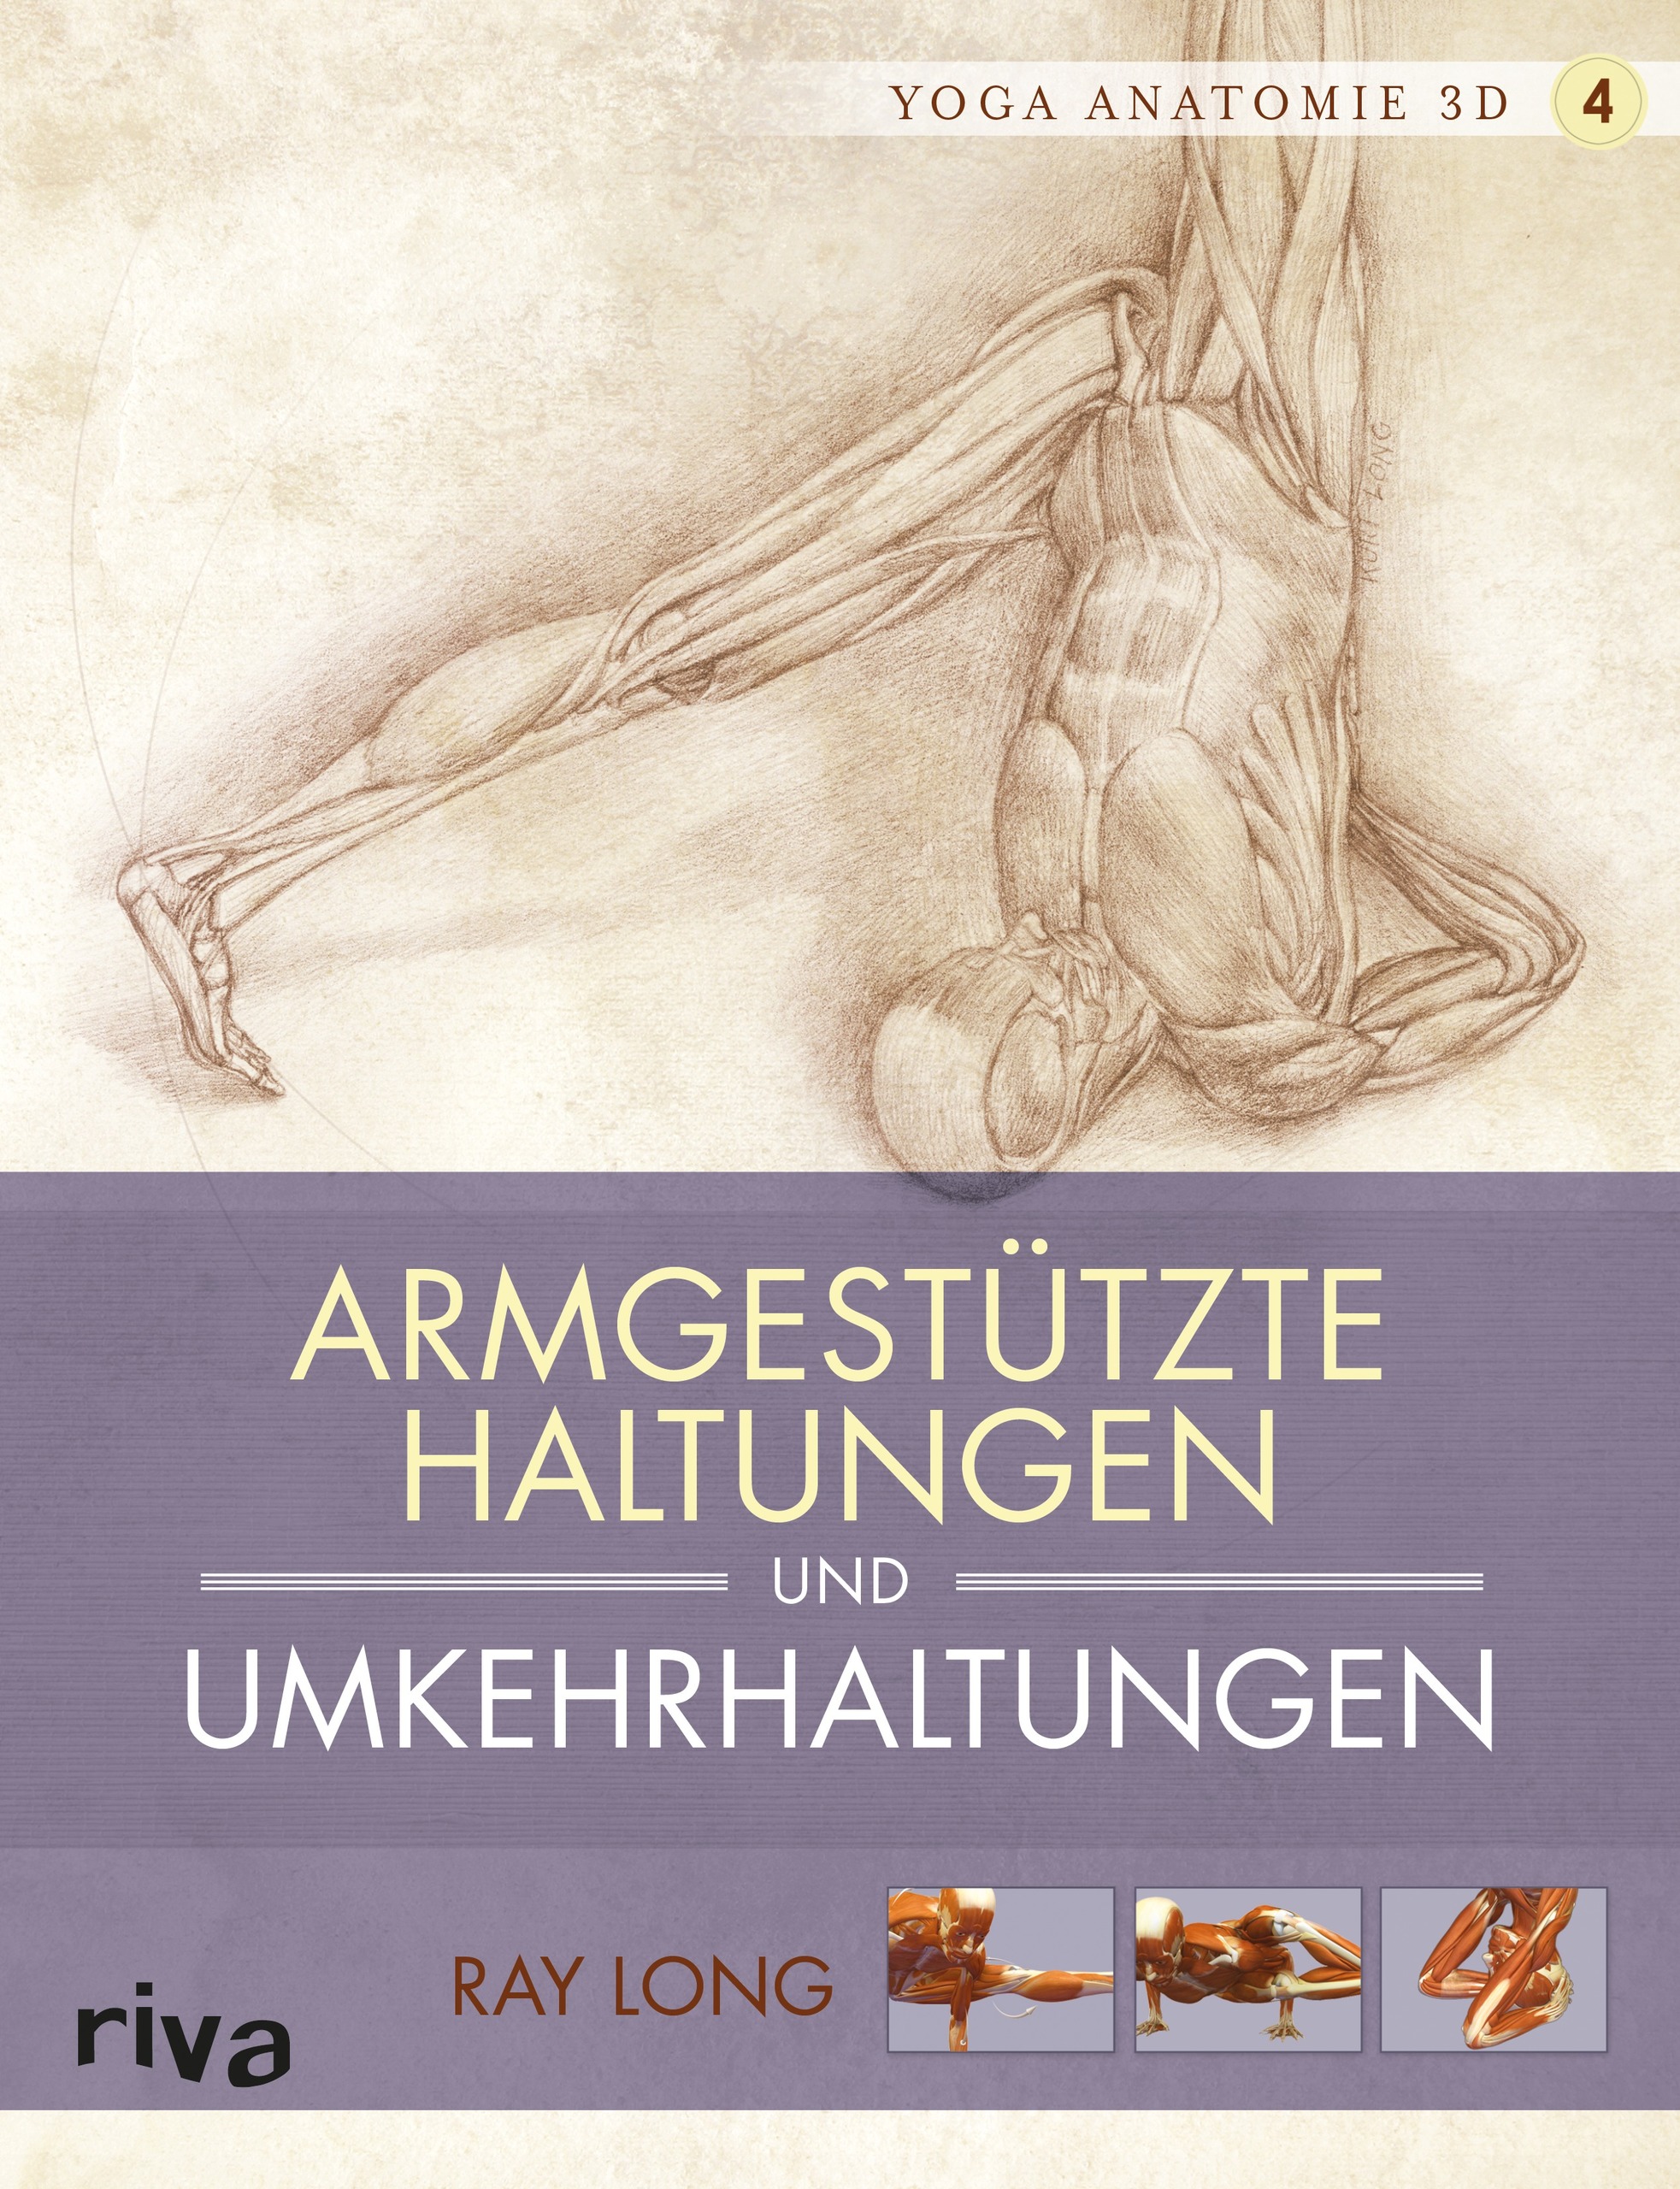 Yoga-Anatomie 3D - 4 - Armgestützte Haltungen und Umkehrhaltungen (Buch)